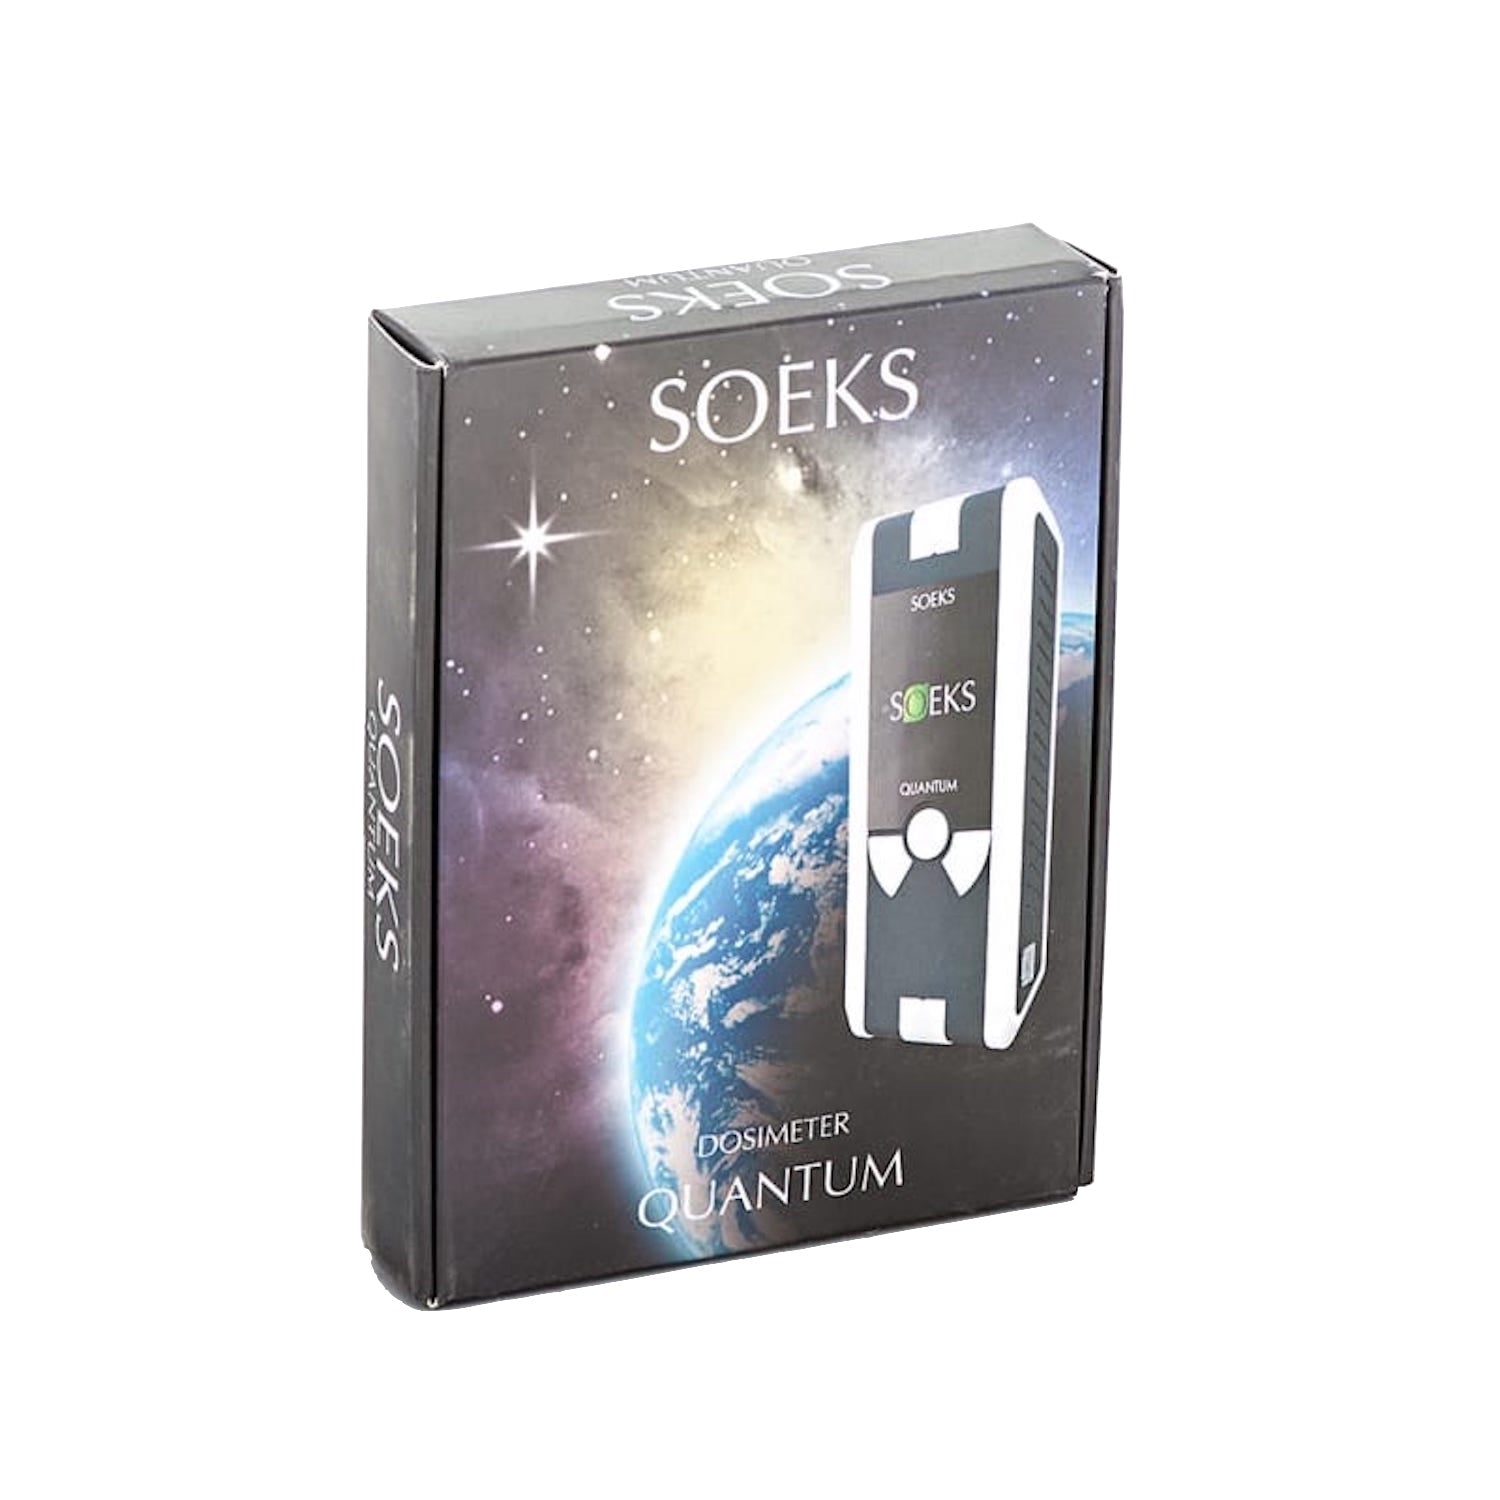 SOEKS Quantum Professional Dosimeter  in the box